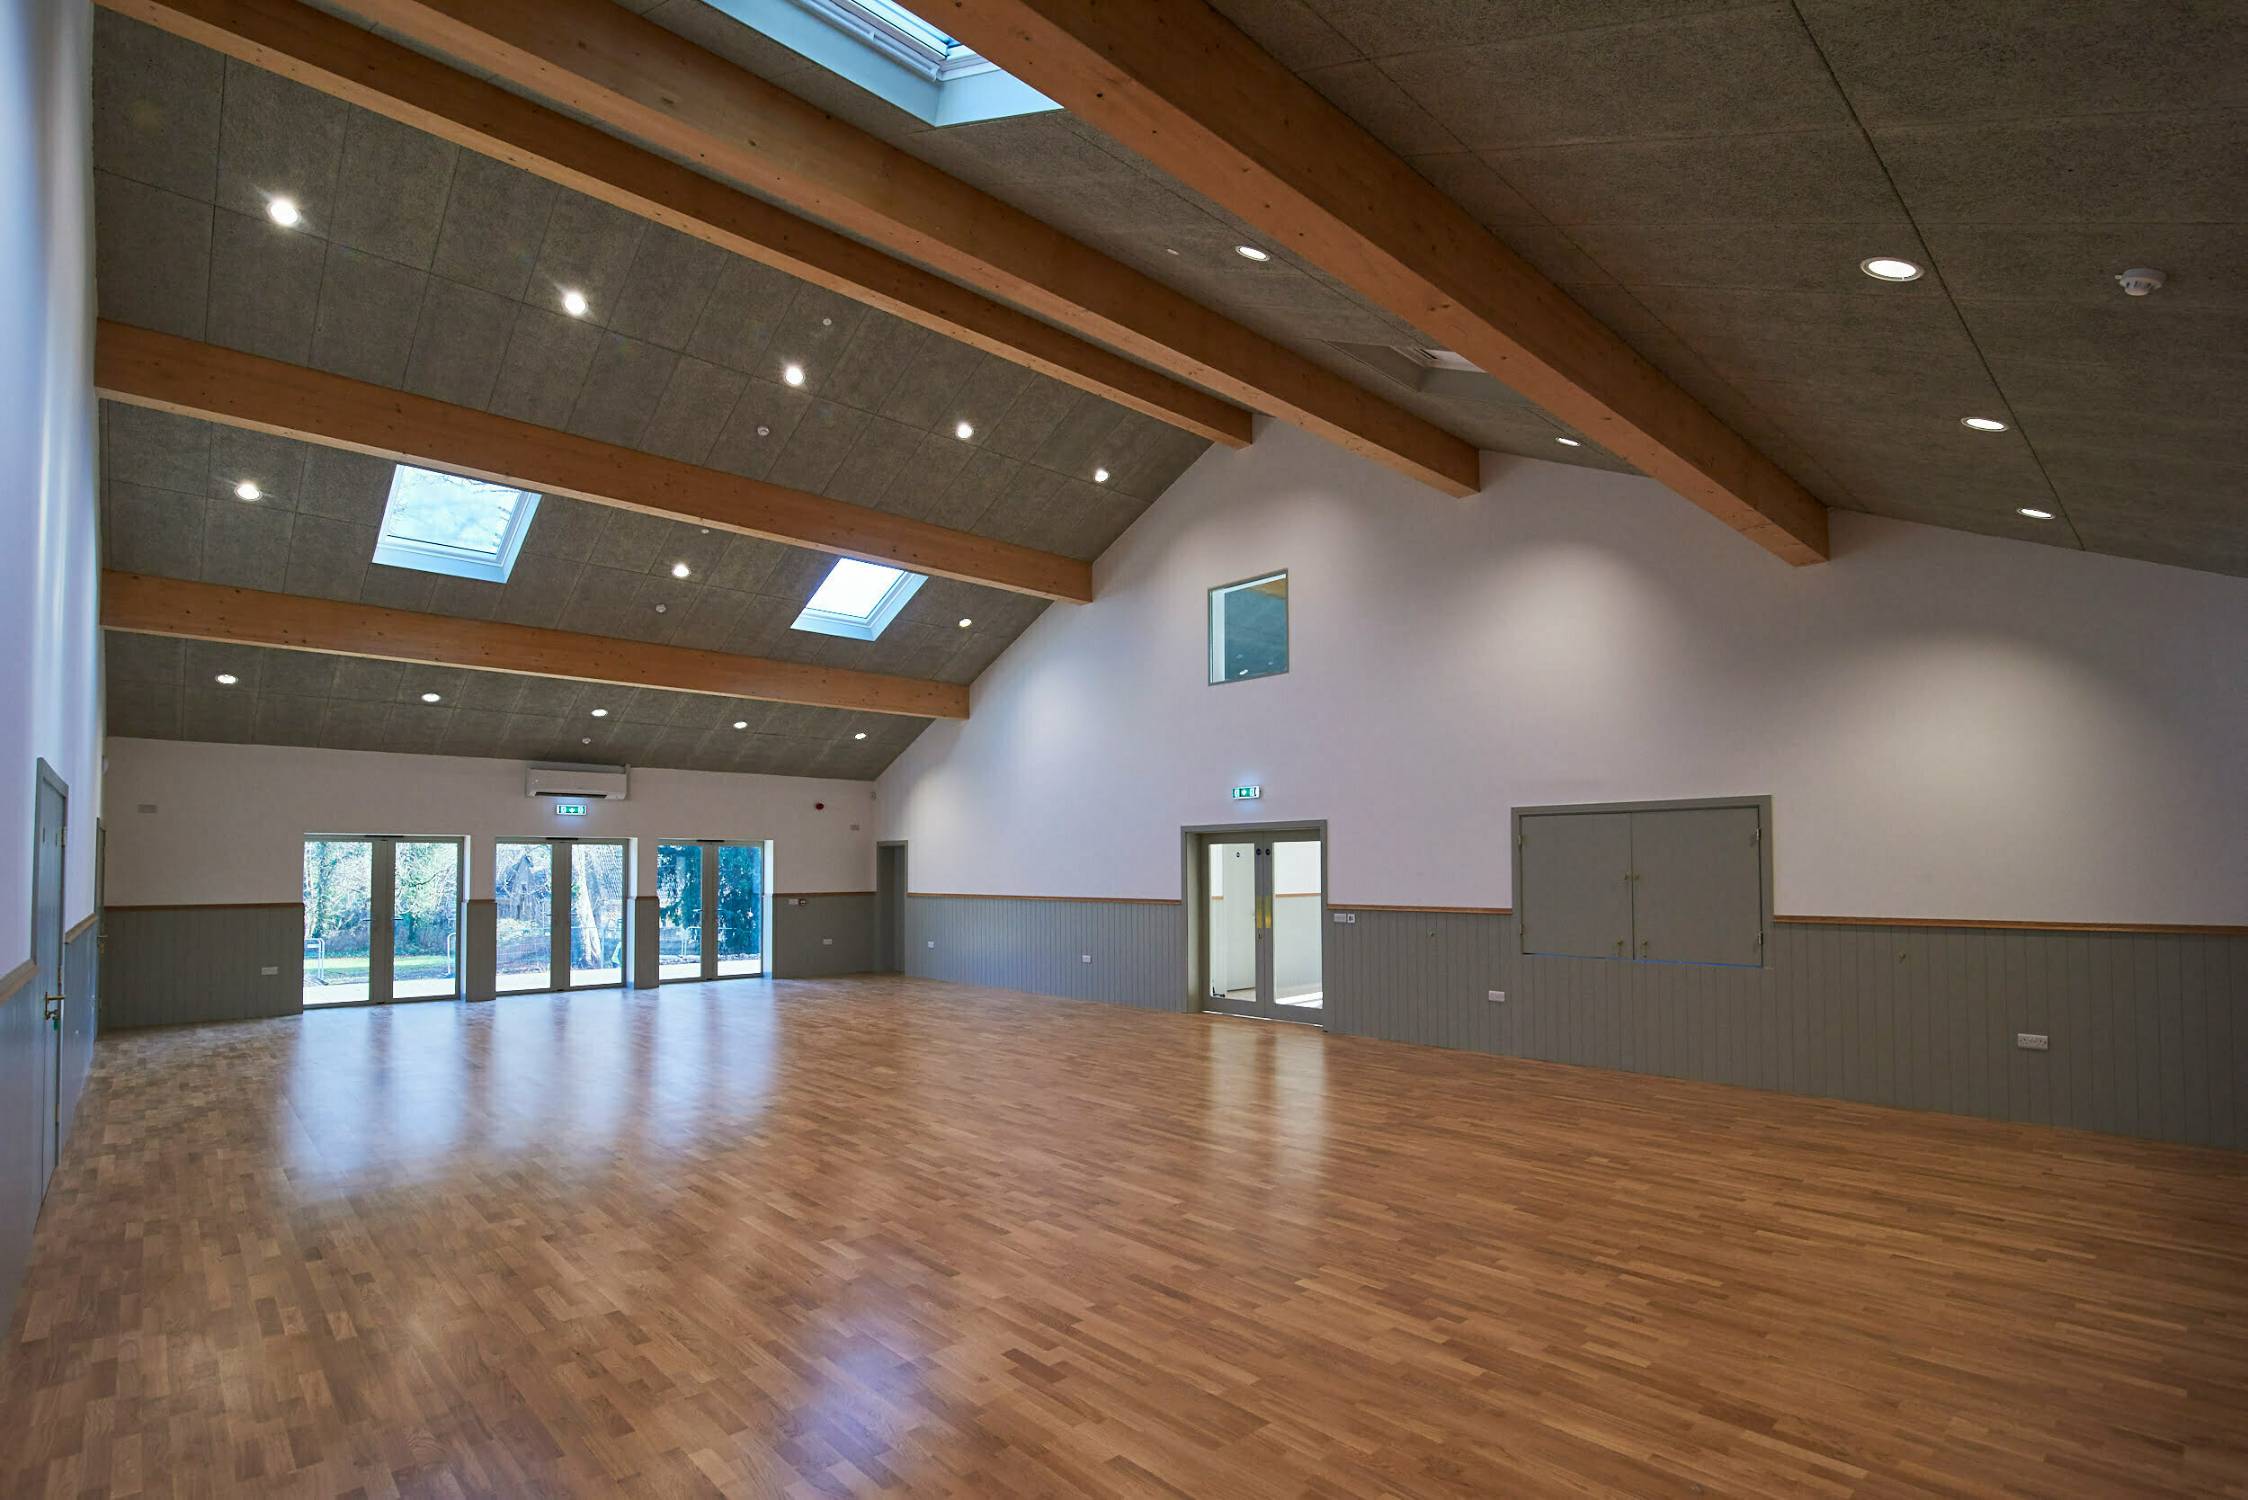 Active Floor - Sports Floor 